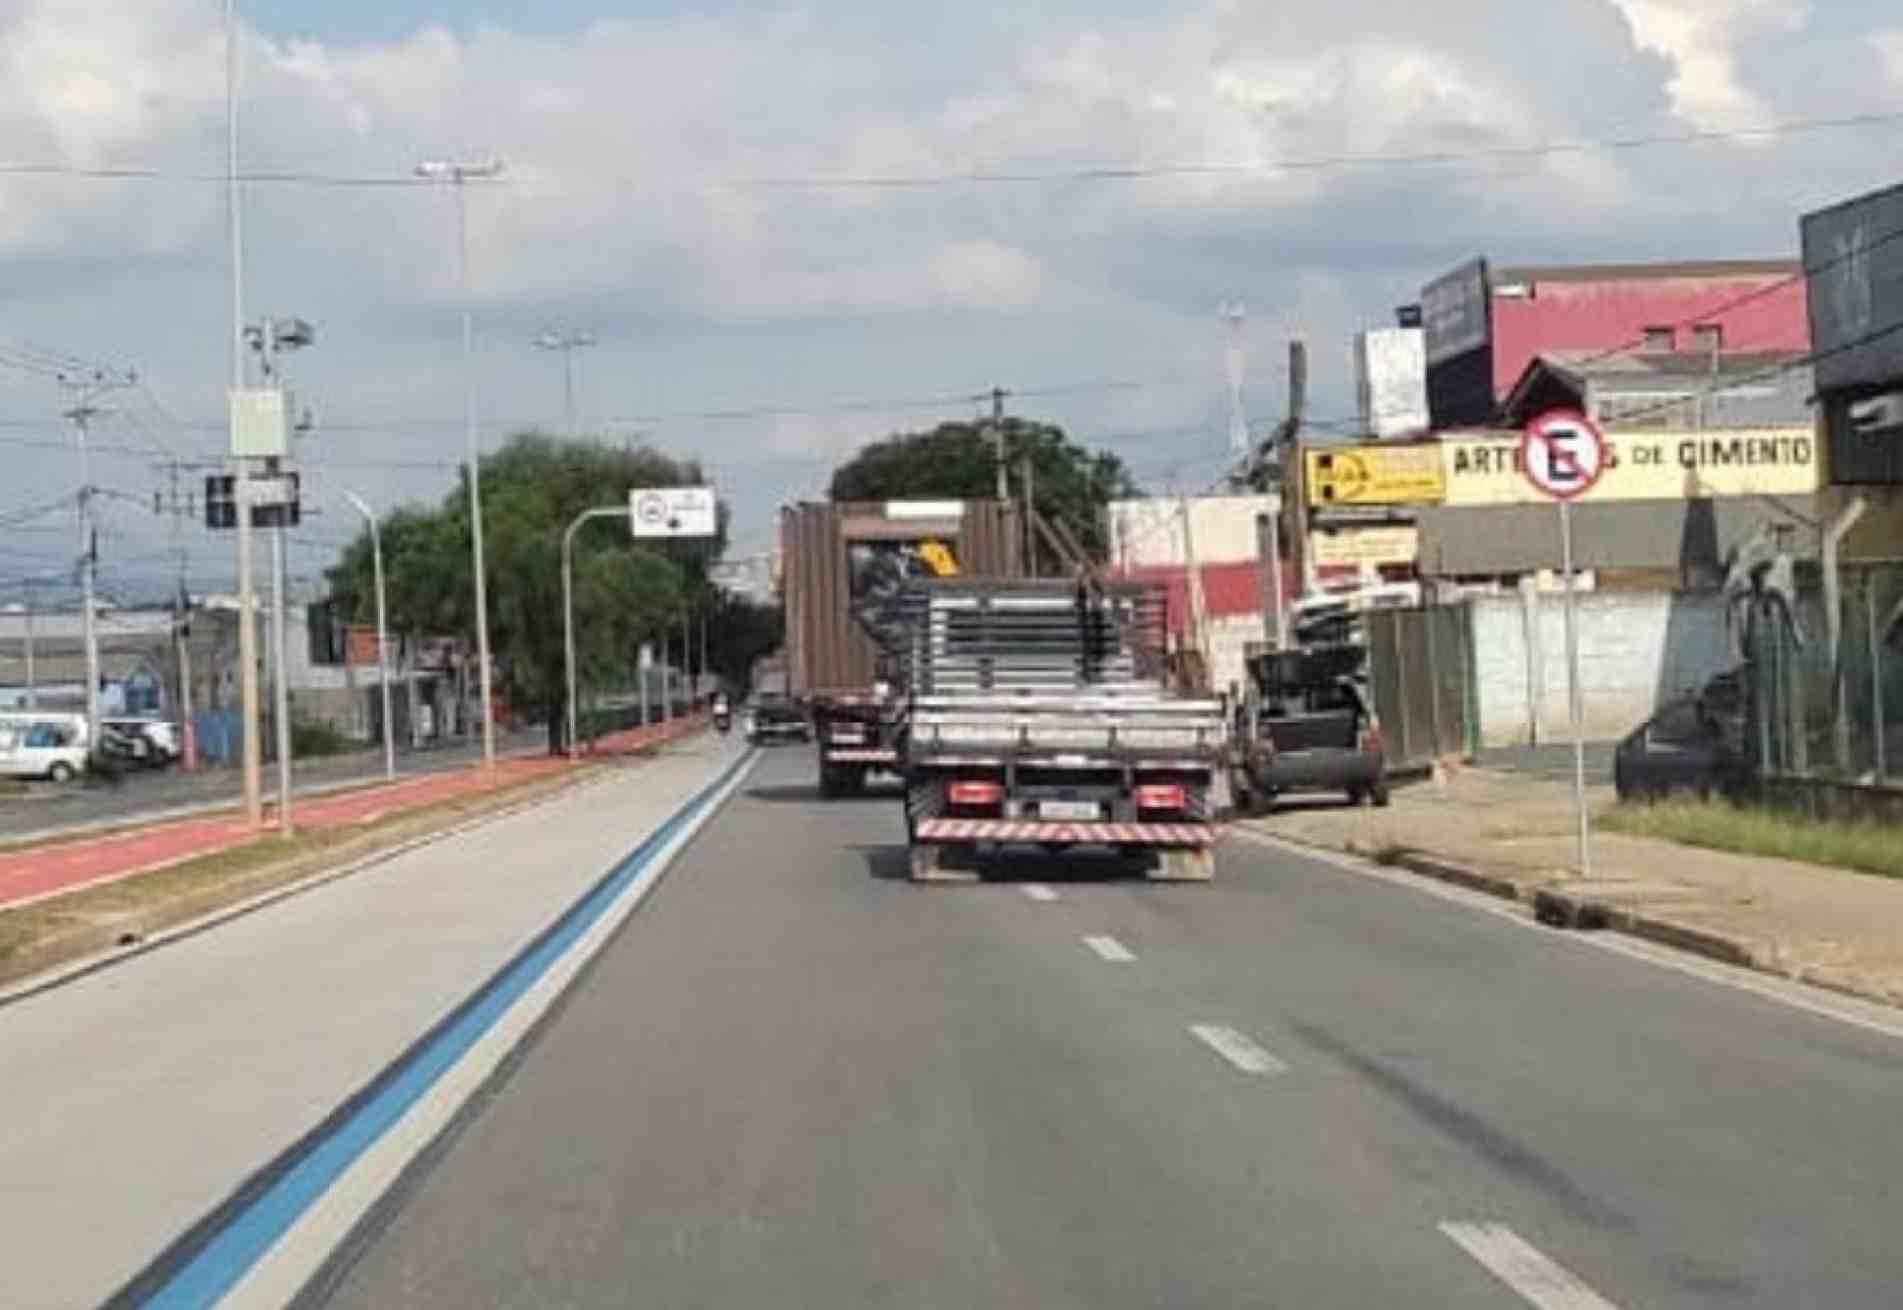 Dois caminhões transitavam pela via com carga maior que a faixa.